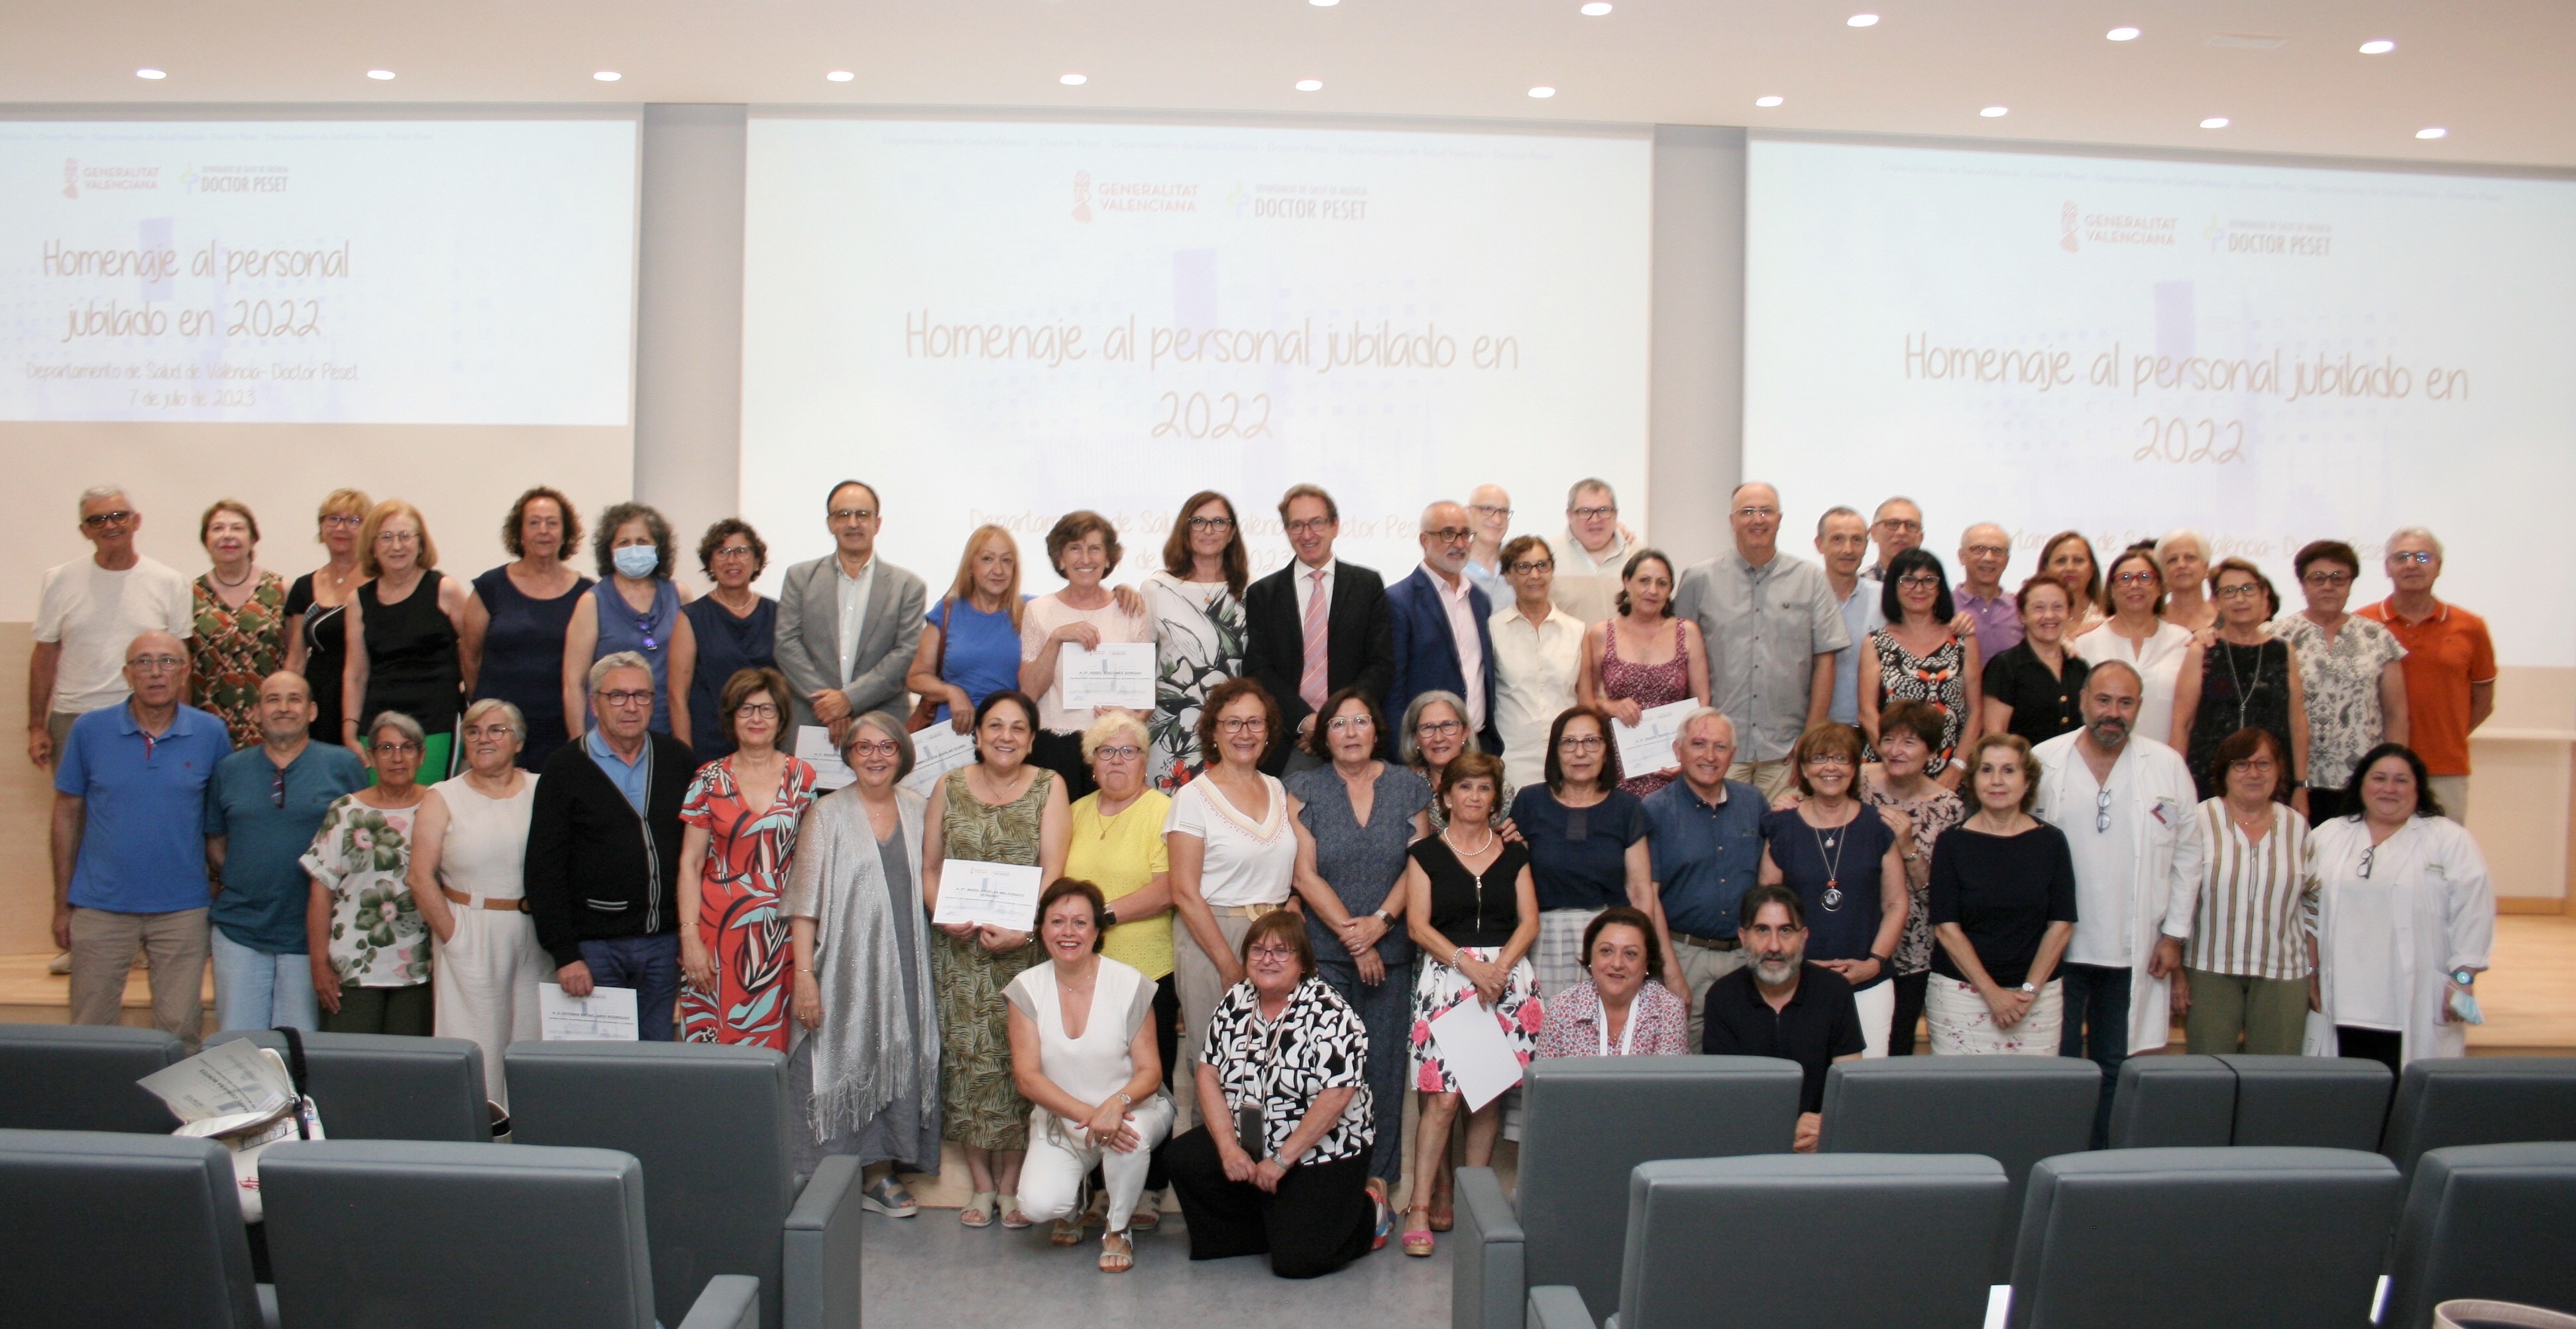 El Departamento de Salud de València – Doctor Peset rinde homenaje a 128 profesionales que se han ju